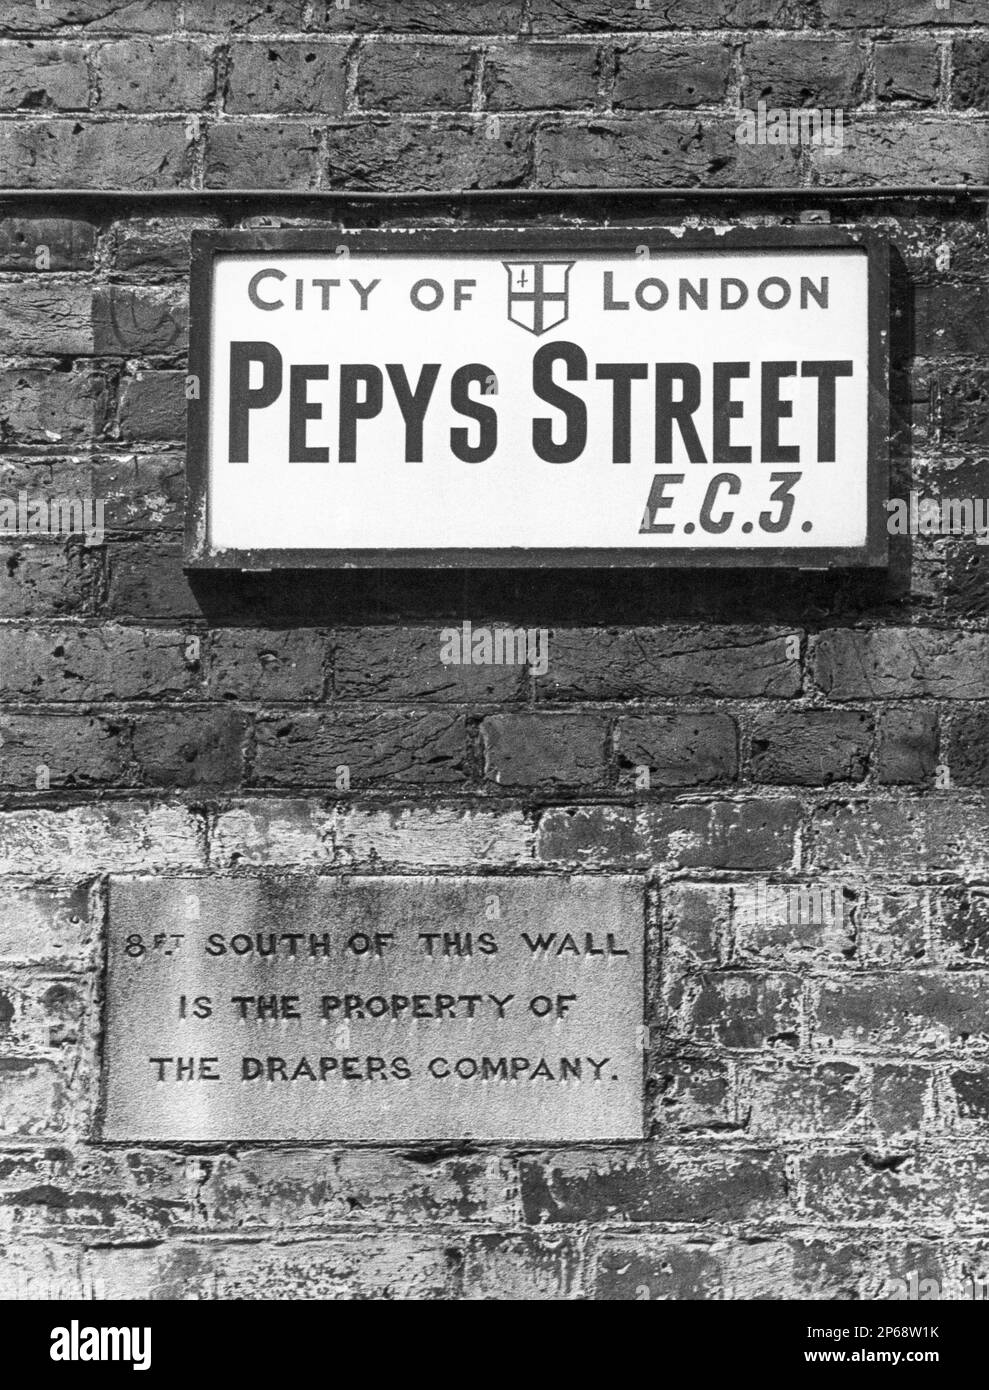 Ein Schild für Pepys Street E.C.3. In der City of London, England, Großbritannien - Foto aufgenommen 1970. Stockfoto